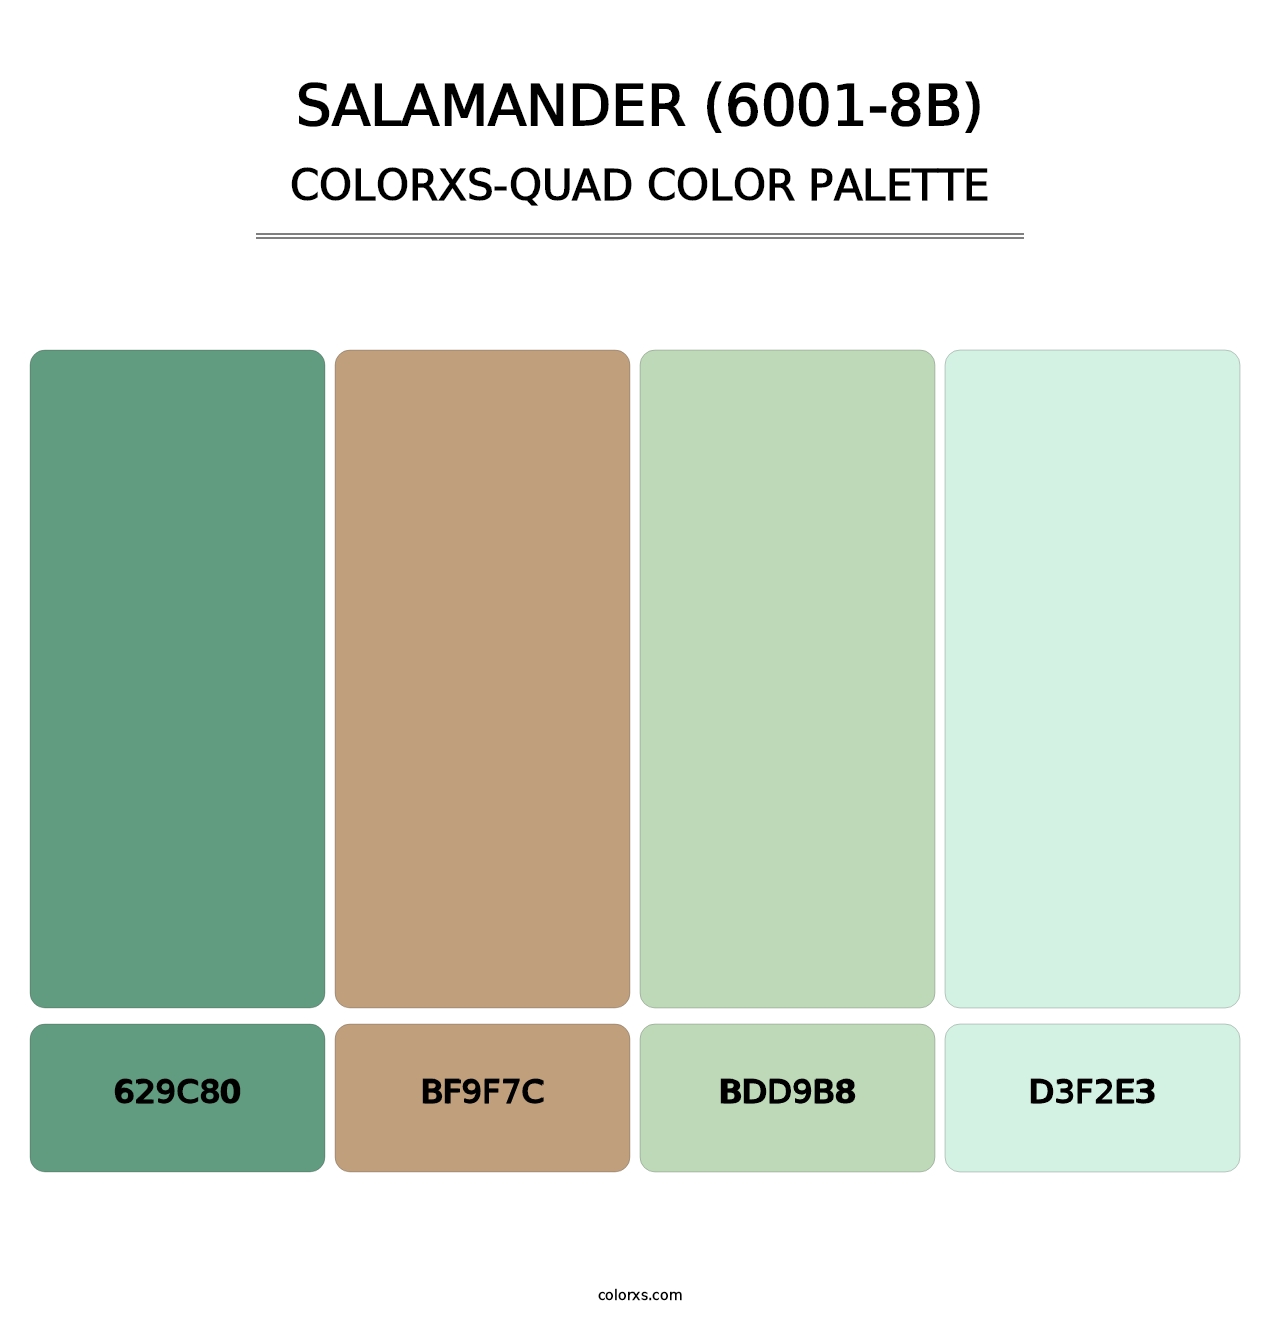 Salamander (6001-8B) - Colorxs Quad Palette